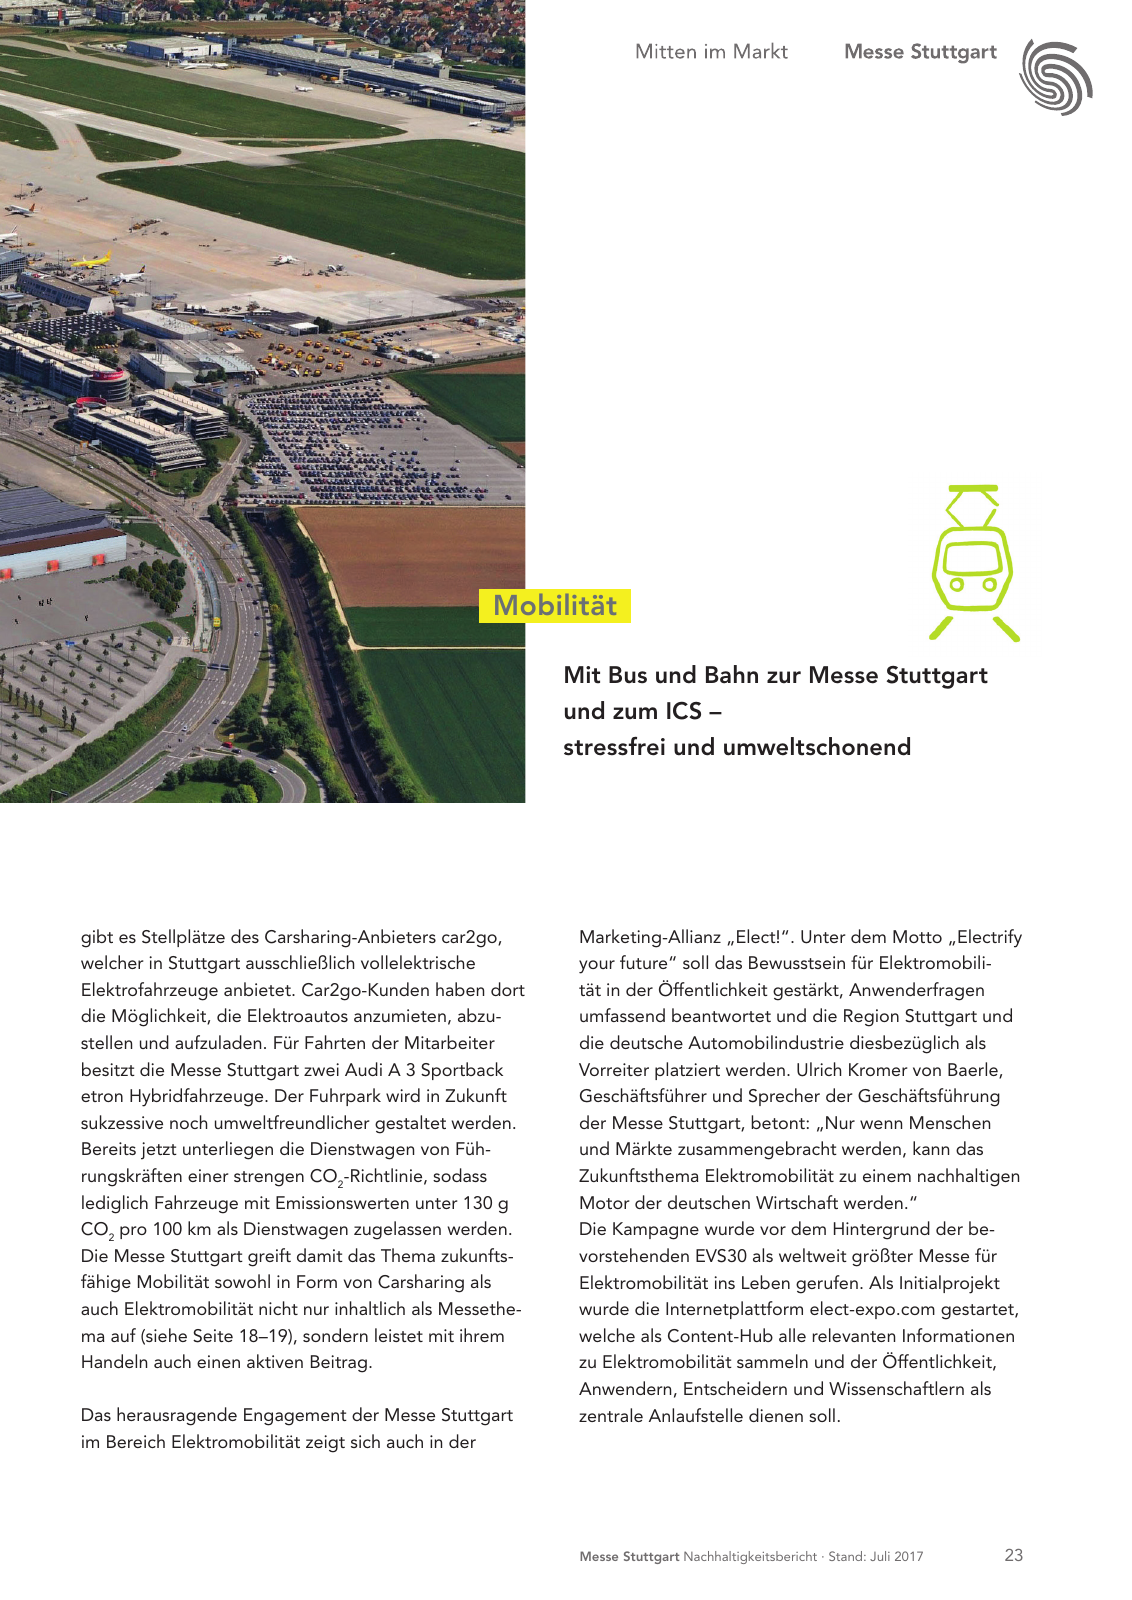 Vorschau Messe Stuttgart Nachhaltigkeitsbericht Seite 23